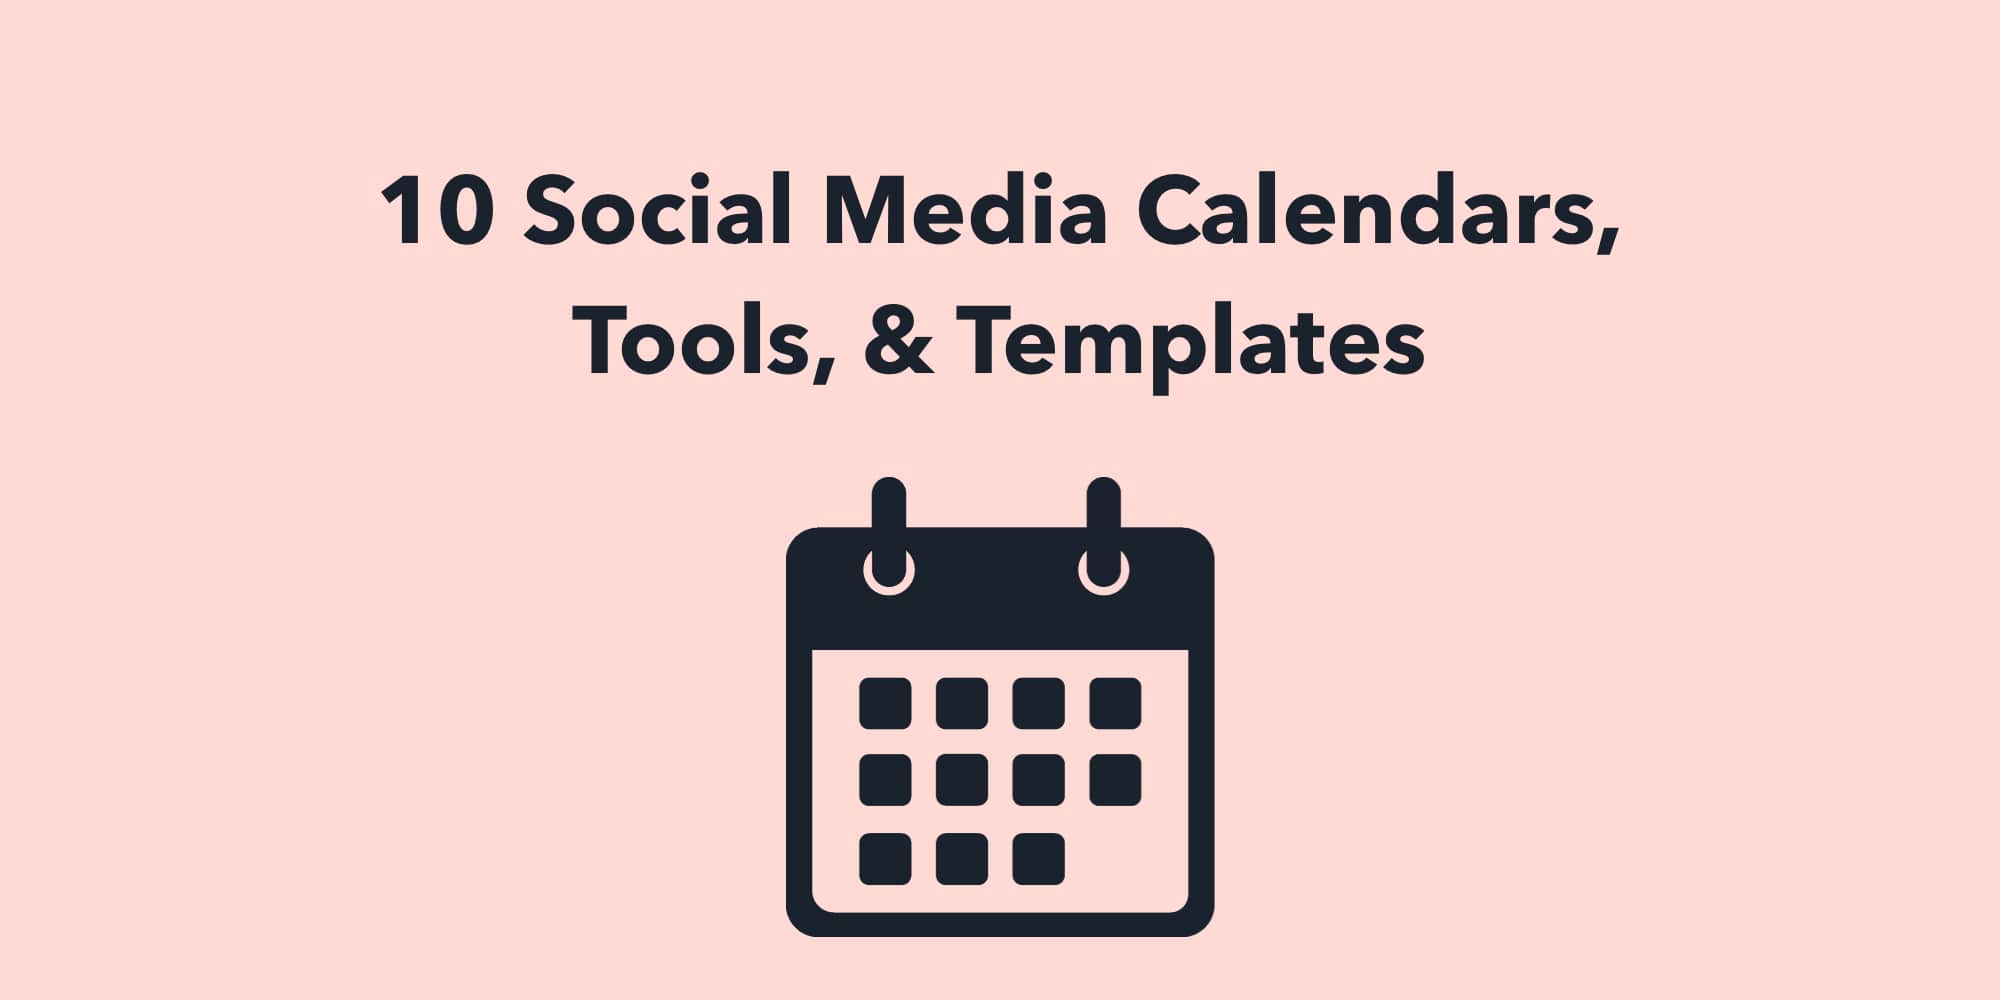 10 Social Media Calendars, Tools, & Templates for 2022